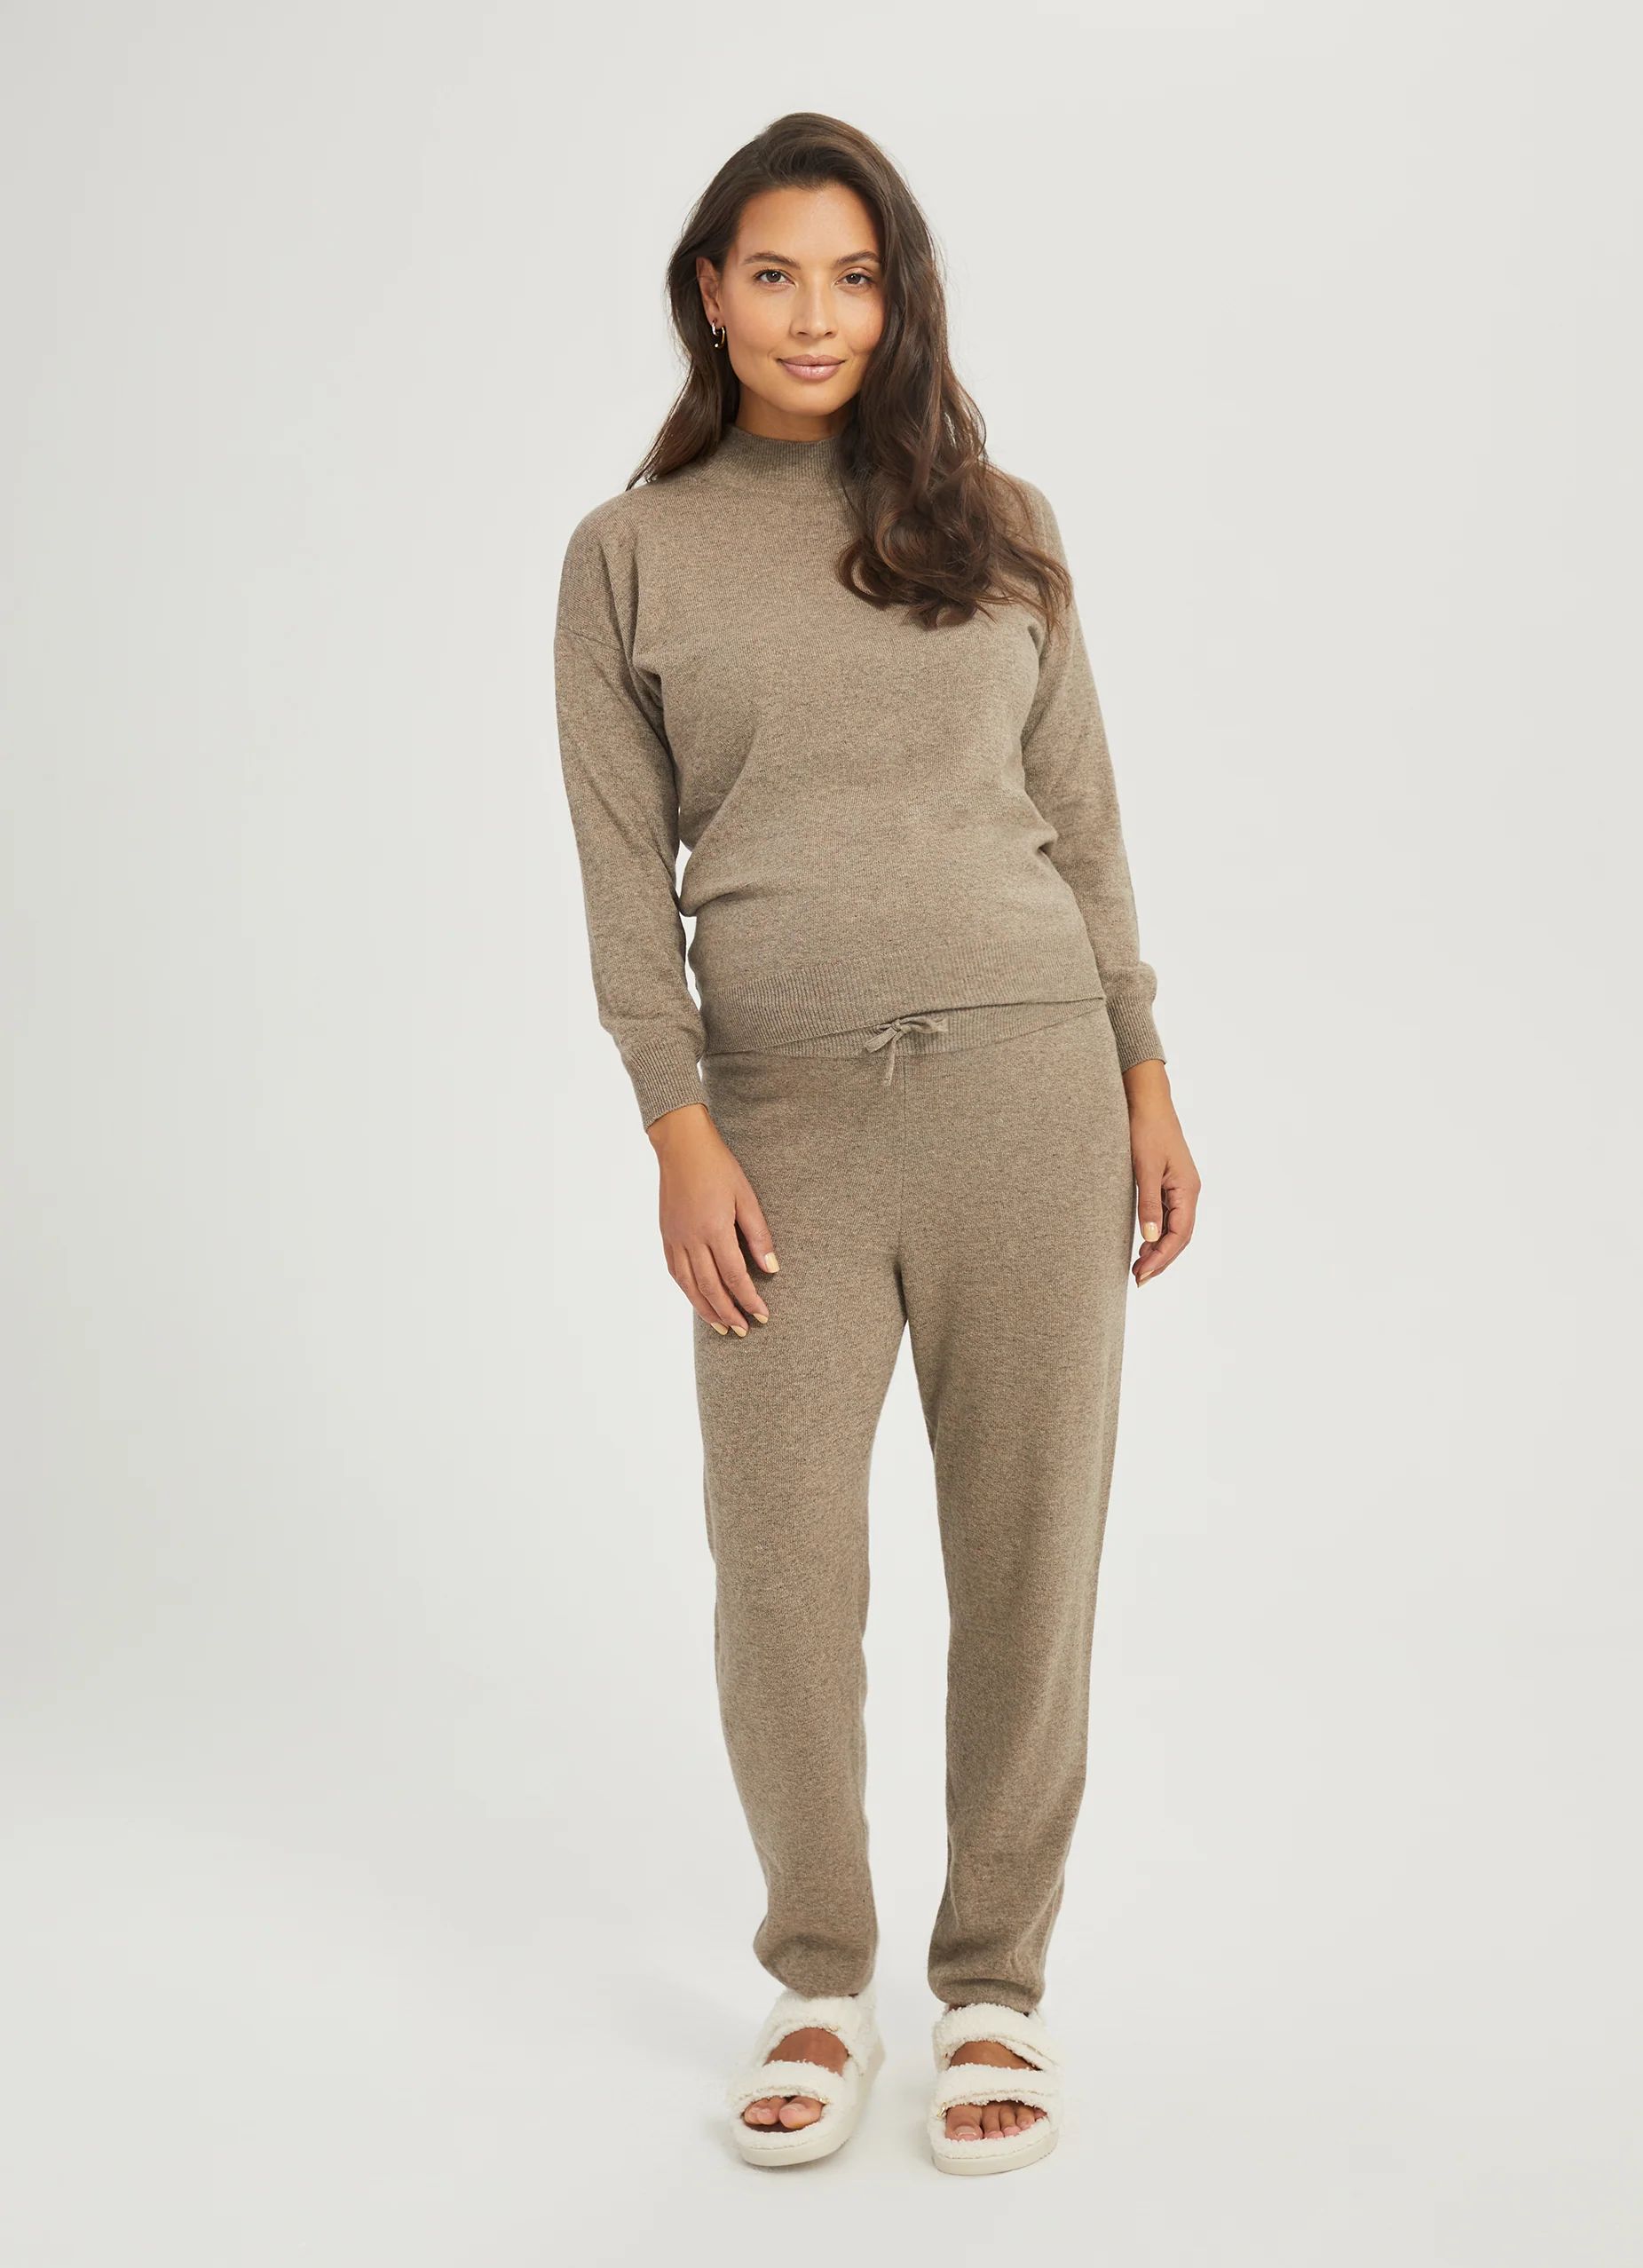 Wool Cashmere Eco Sustainable Maternity Jogger Pant | Something Navy